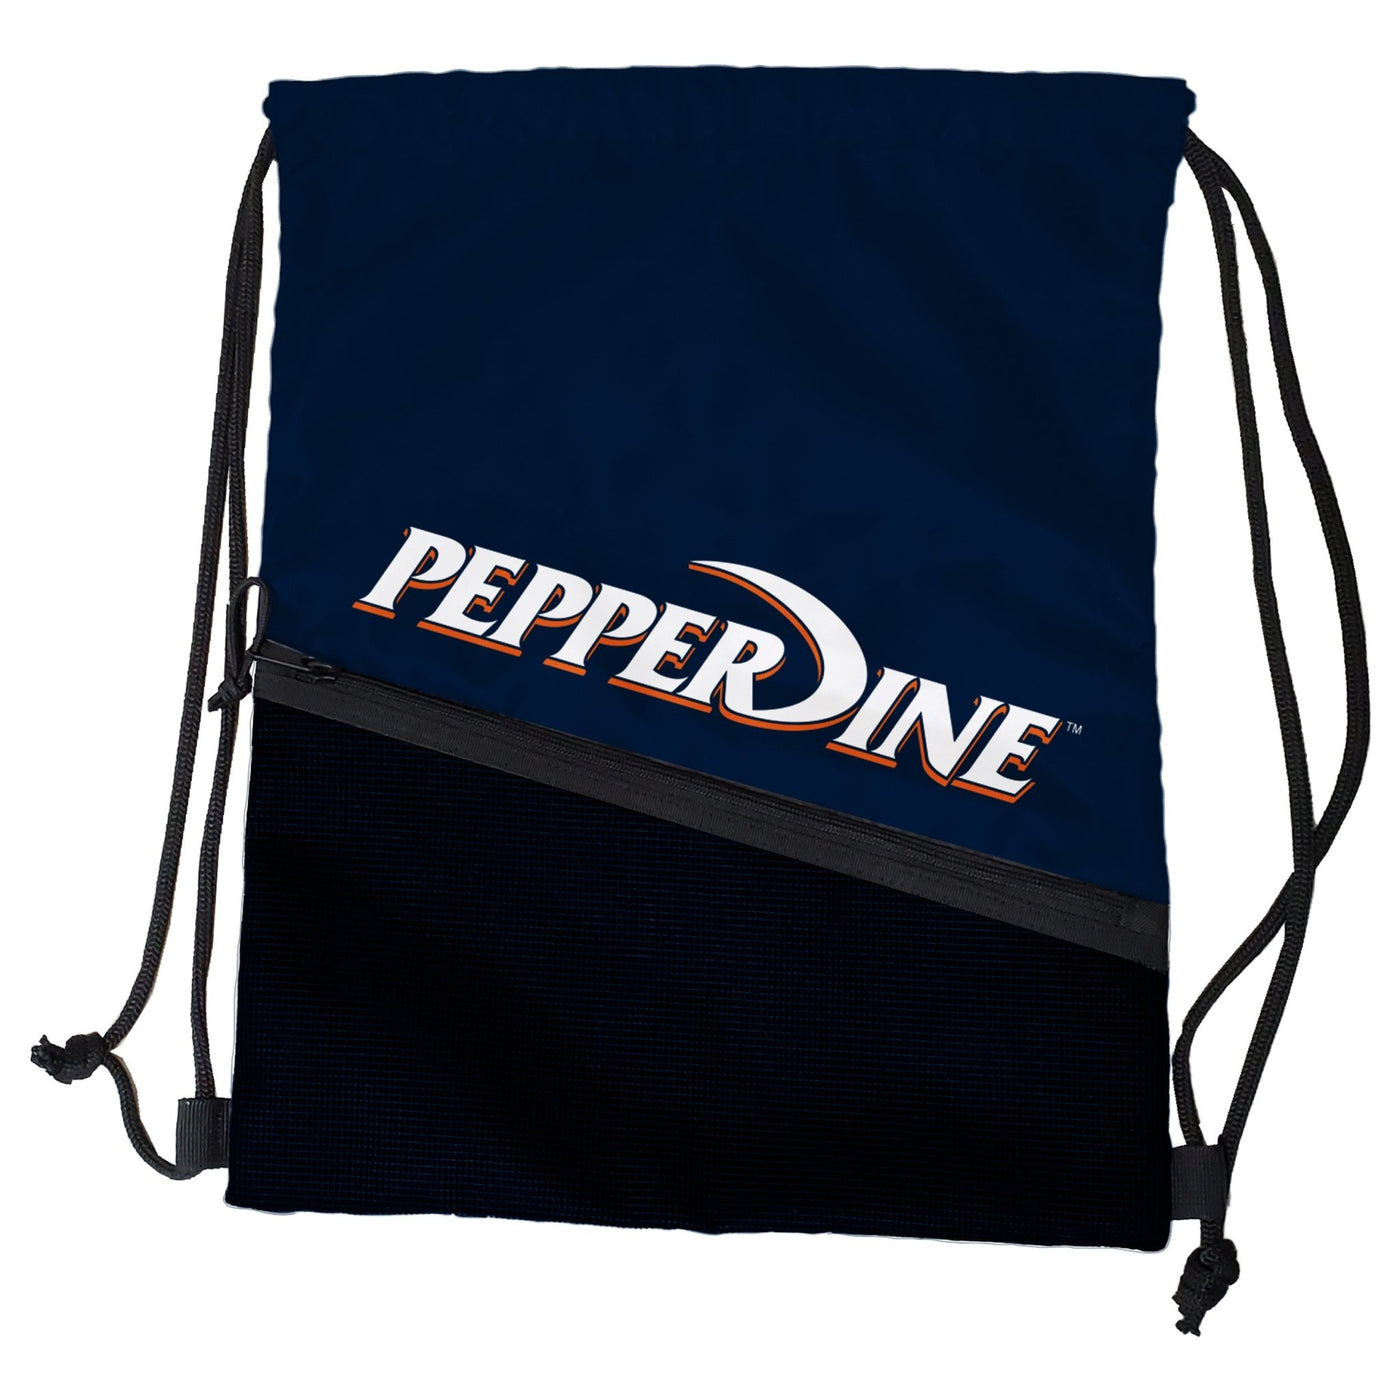 Pepperdine Tilt Backsack - Logo Brands